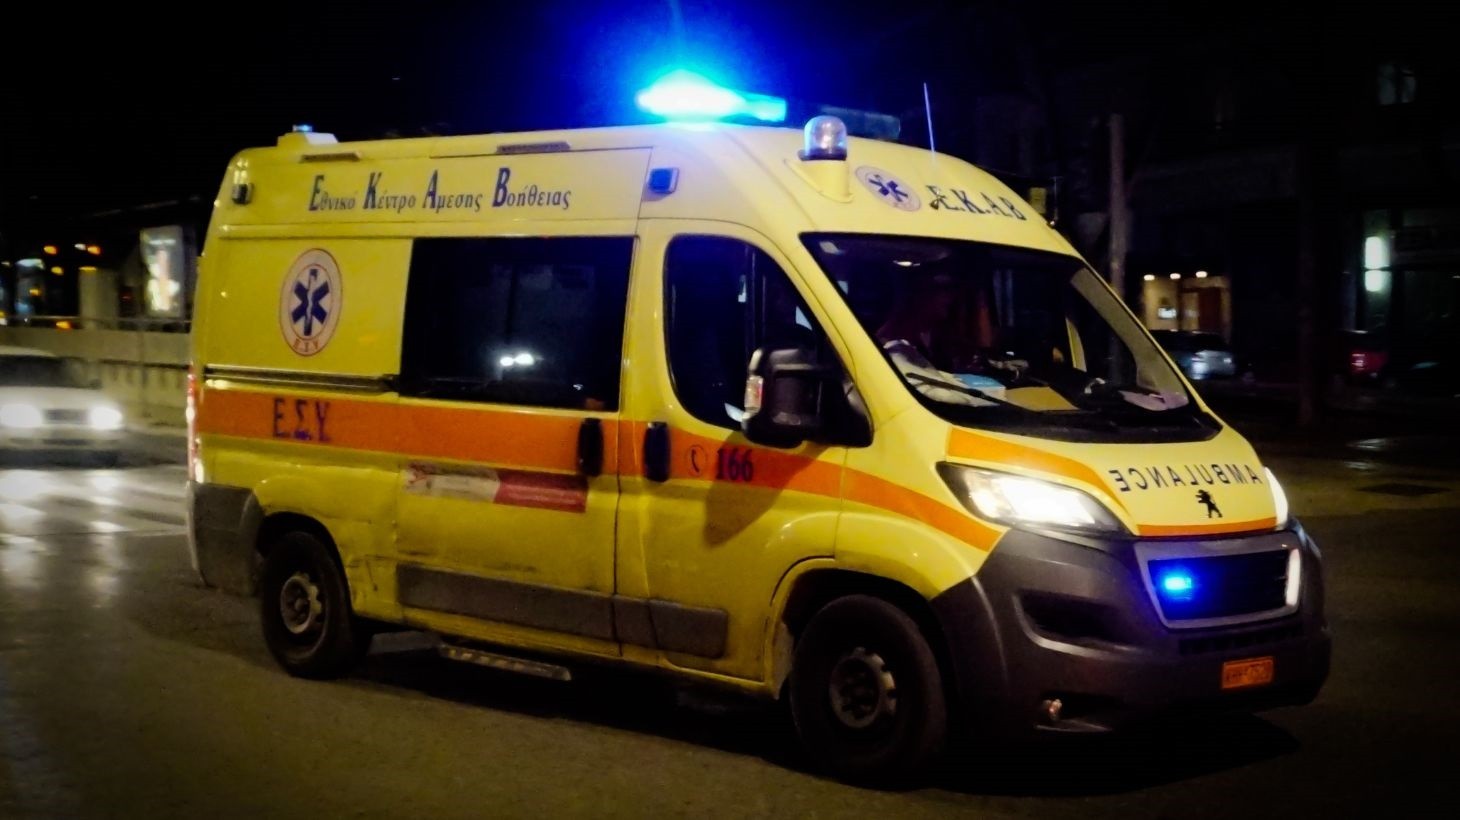 Τροχαίο ατύχημα στην Θεσσαλονίκη - Σε σοβαρή κατάσταση ο οδηγός της μηχανής